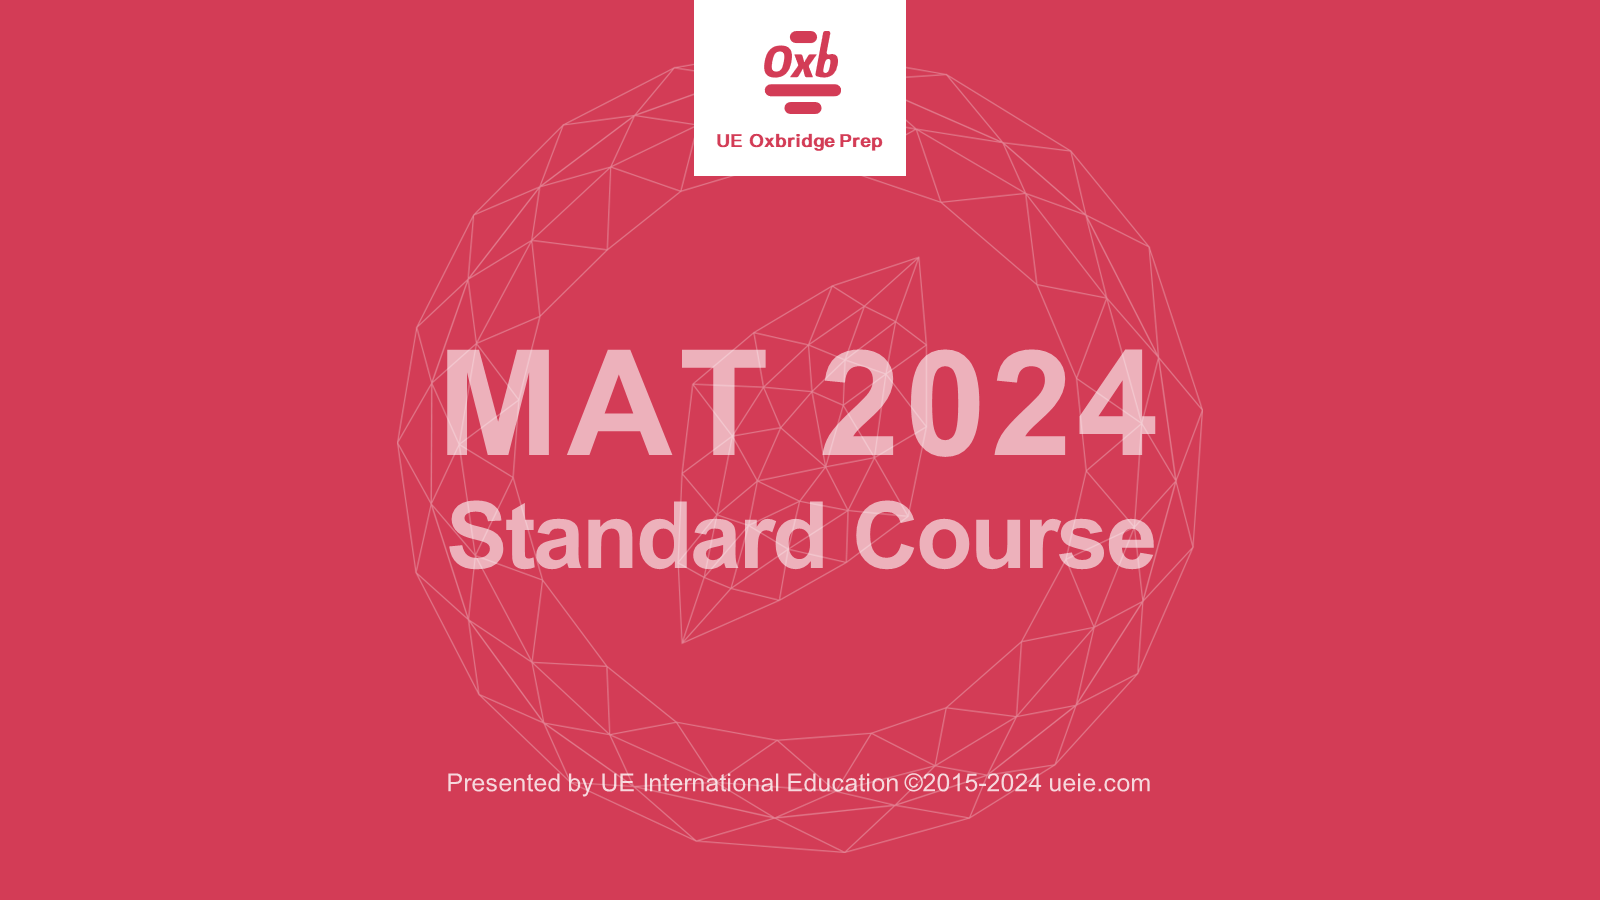 Oxford MAT Standard Course 2024 - Video